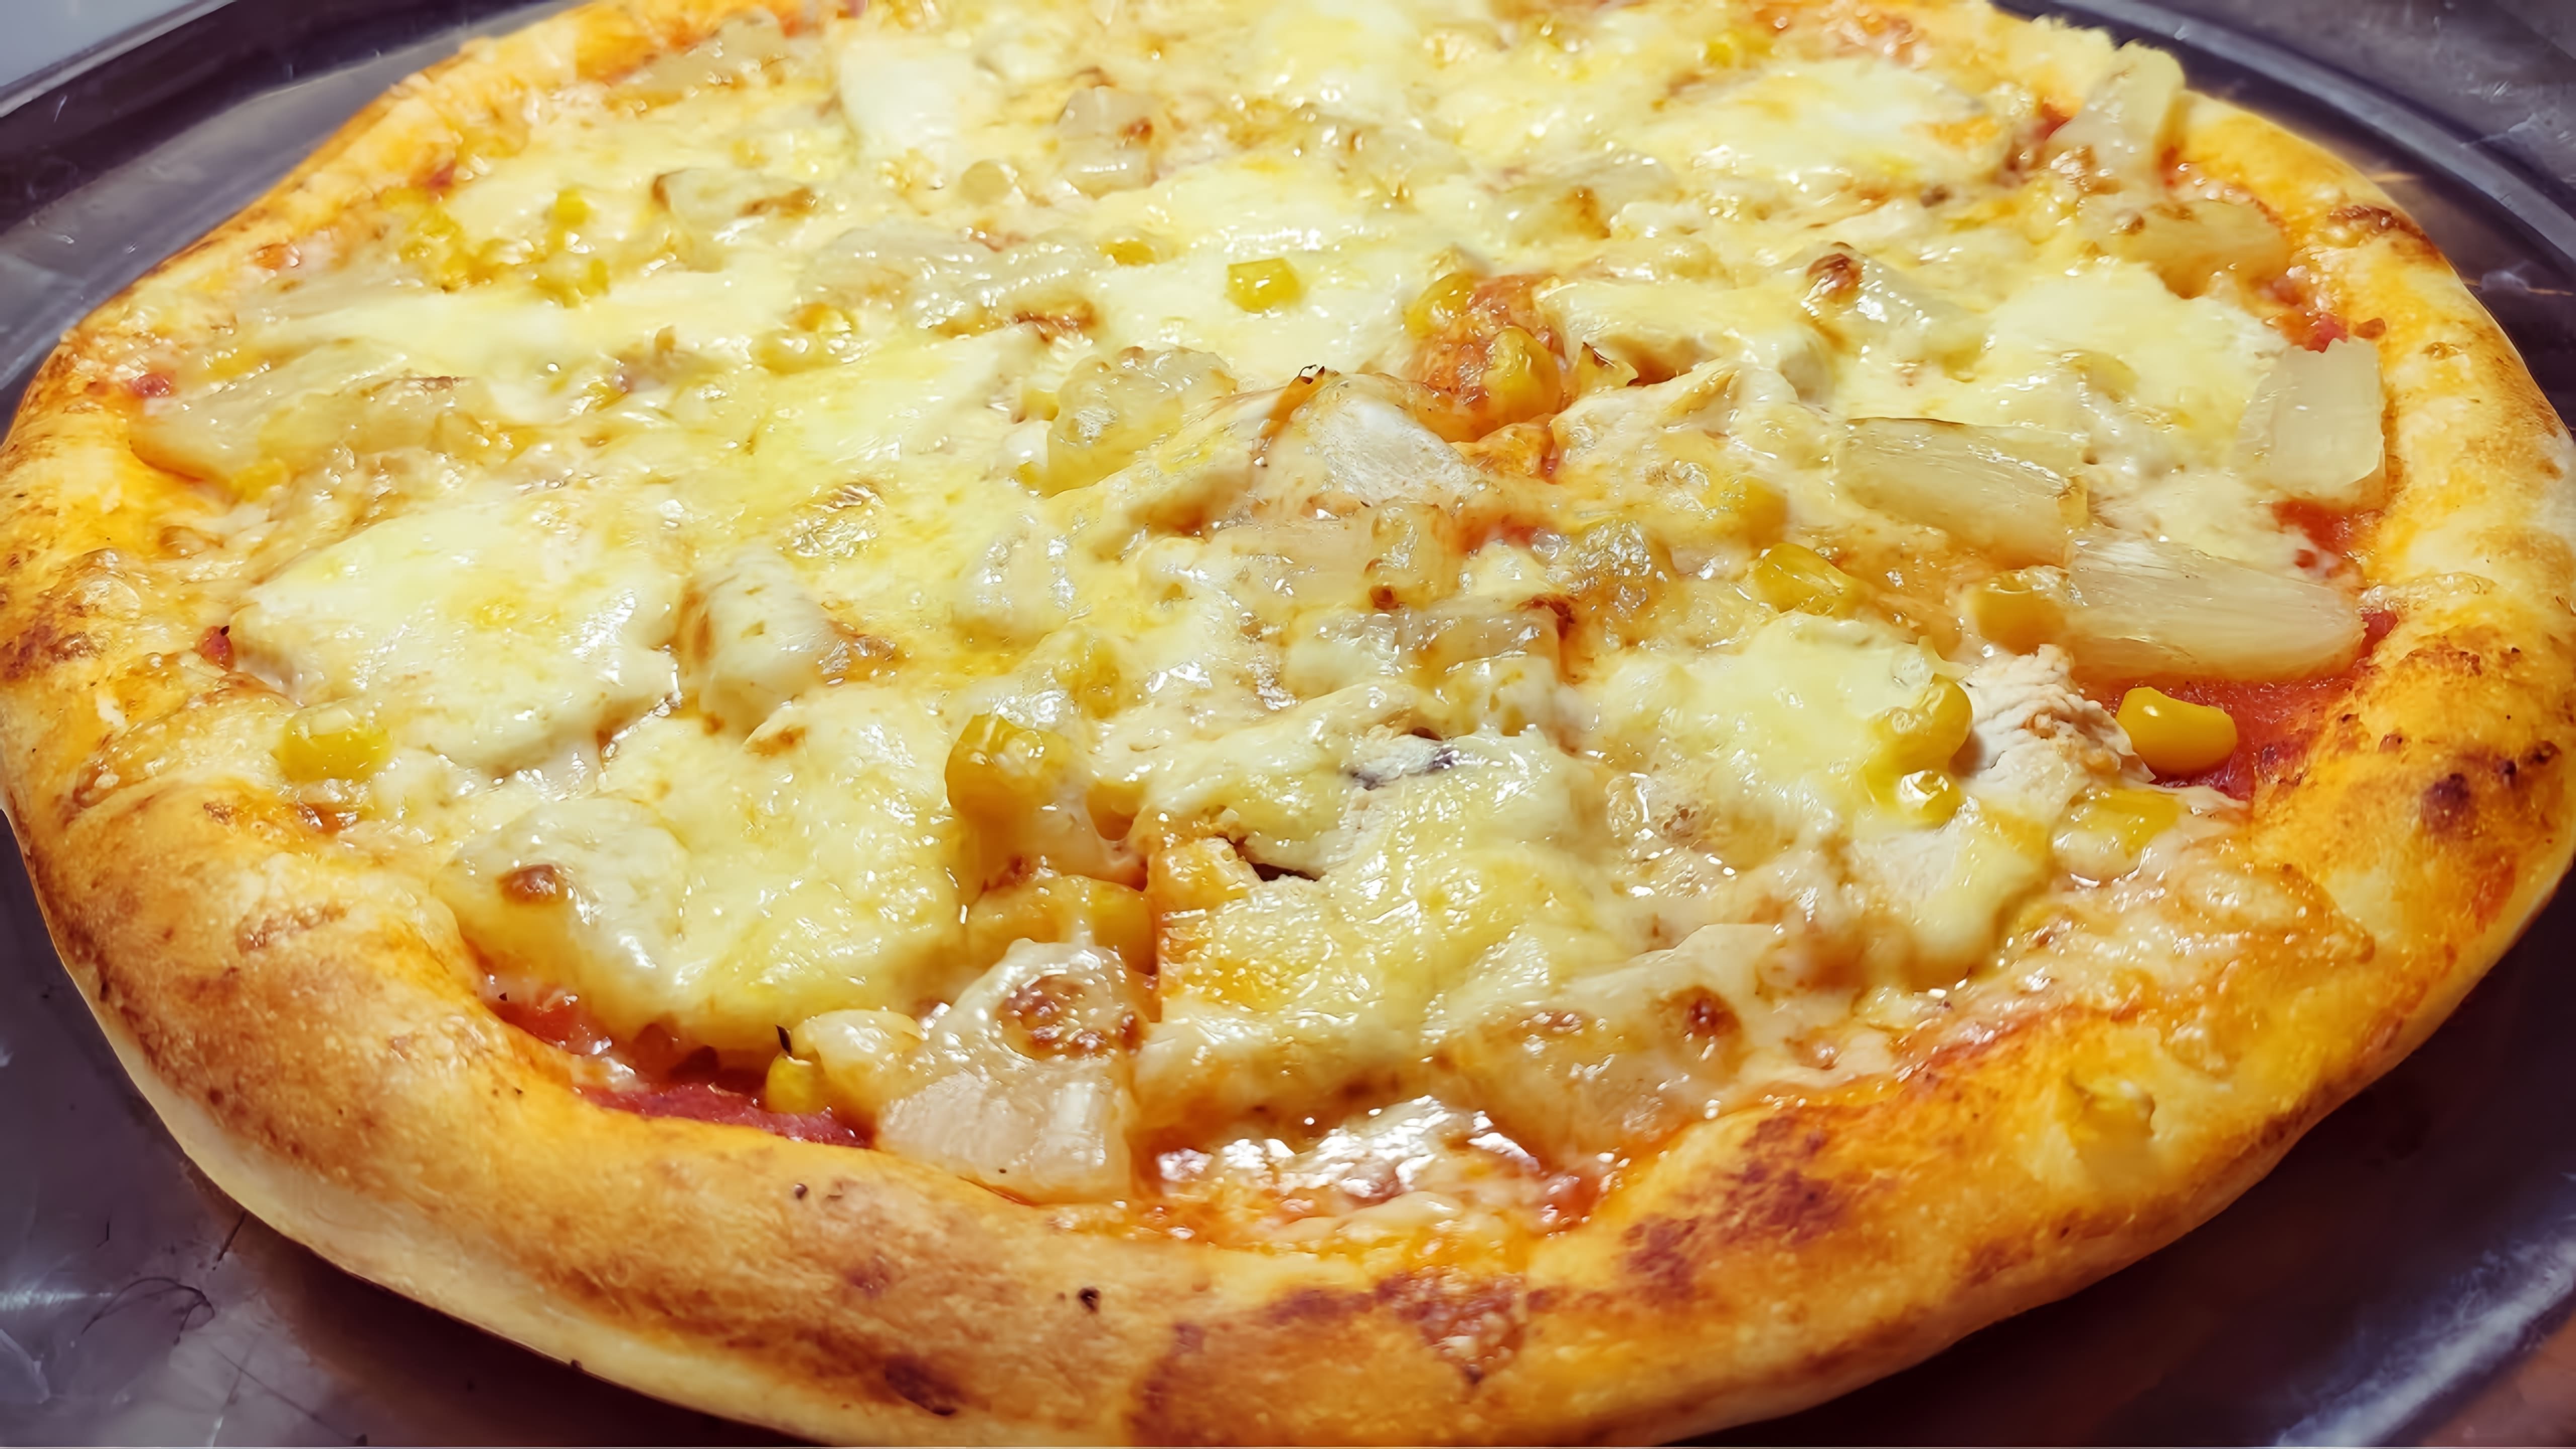 В данном видео демонстрируется процесс приготовления домашней пиццы, как в пиццерии